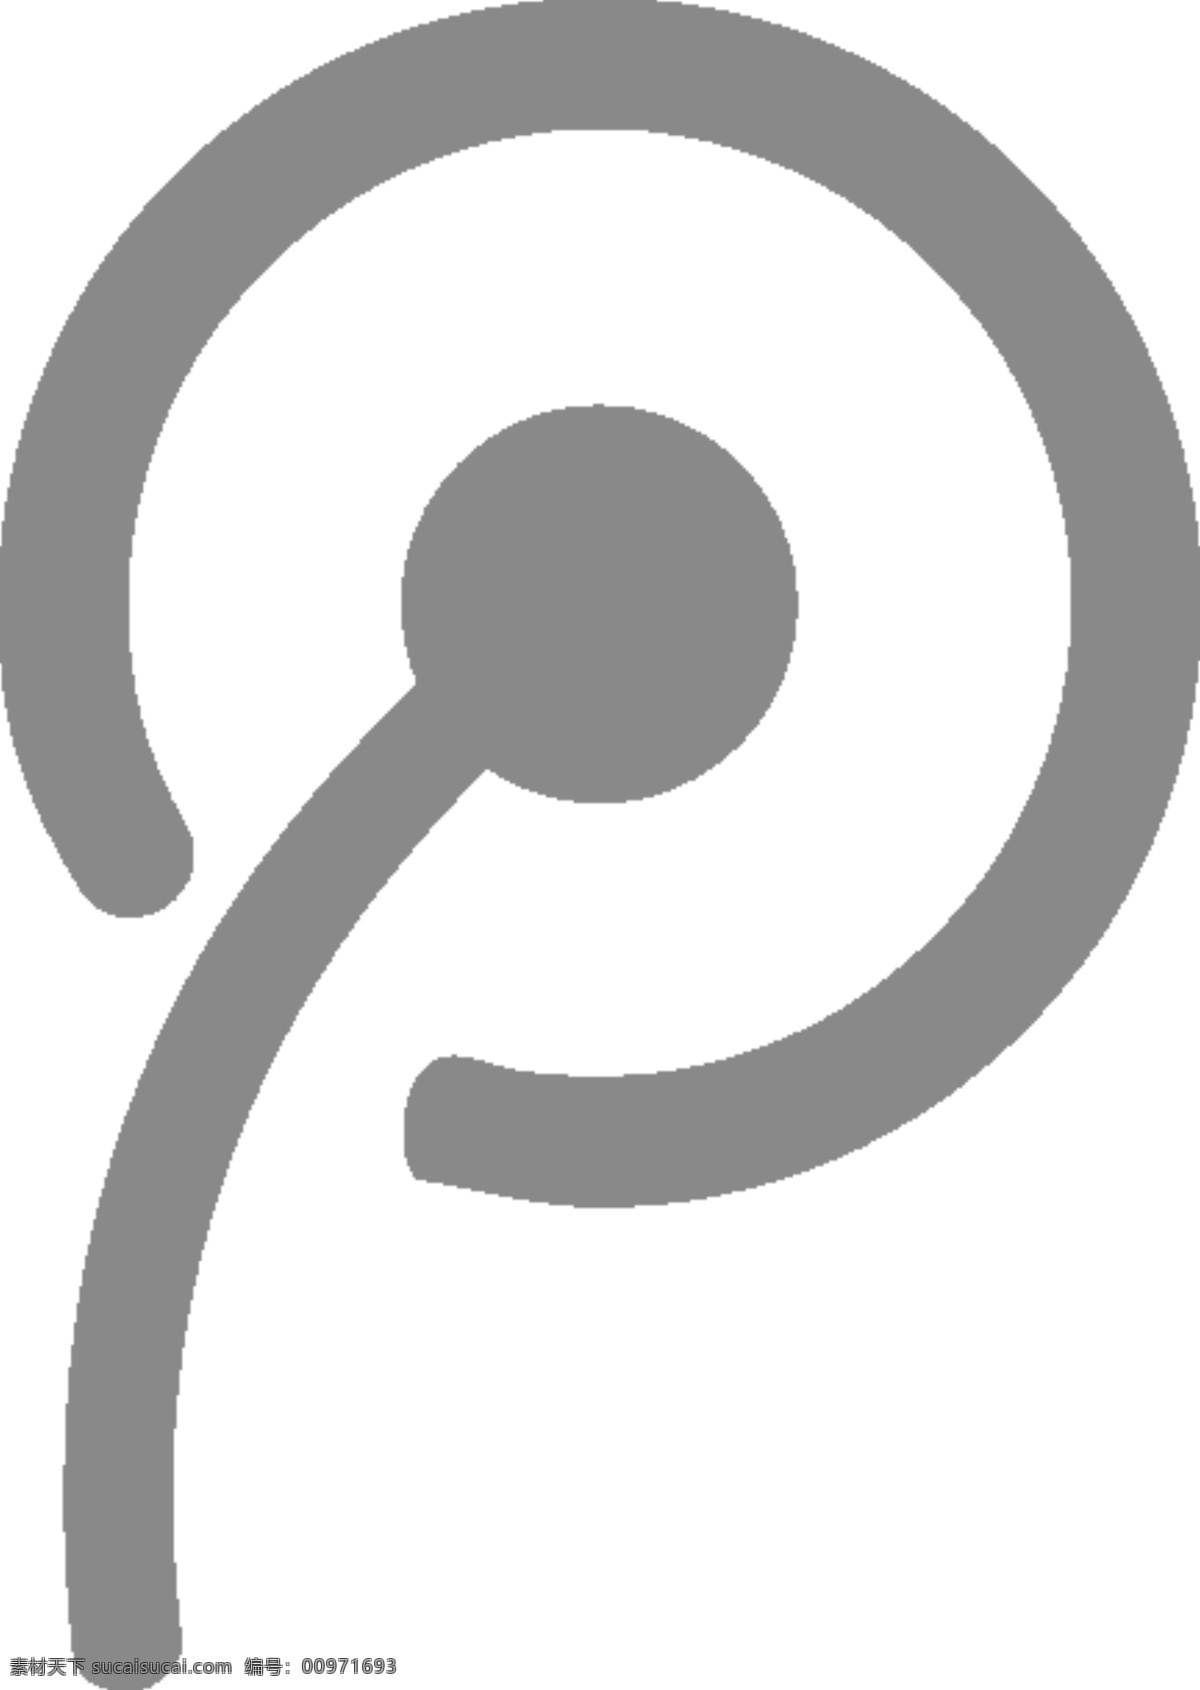 腾讯 微 博 logo